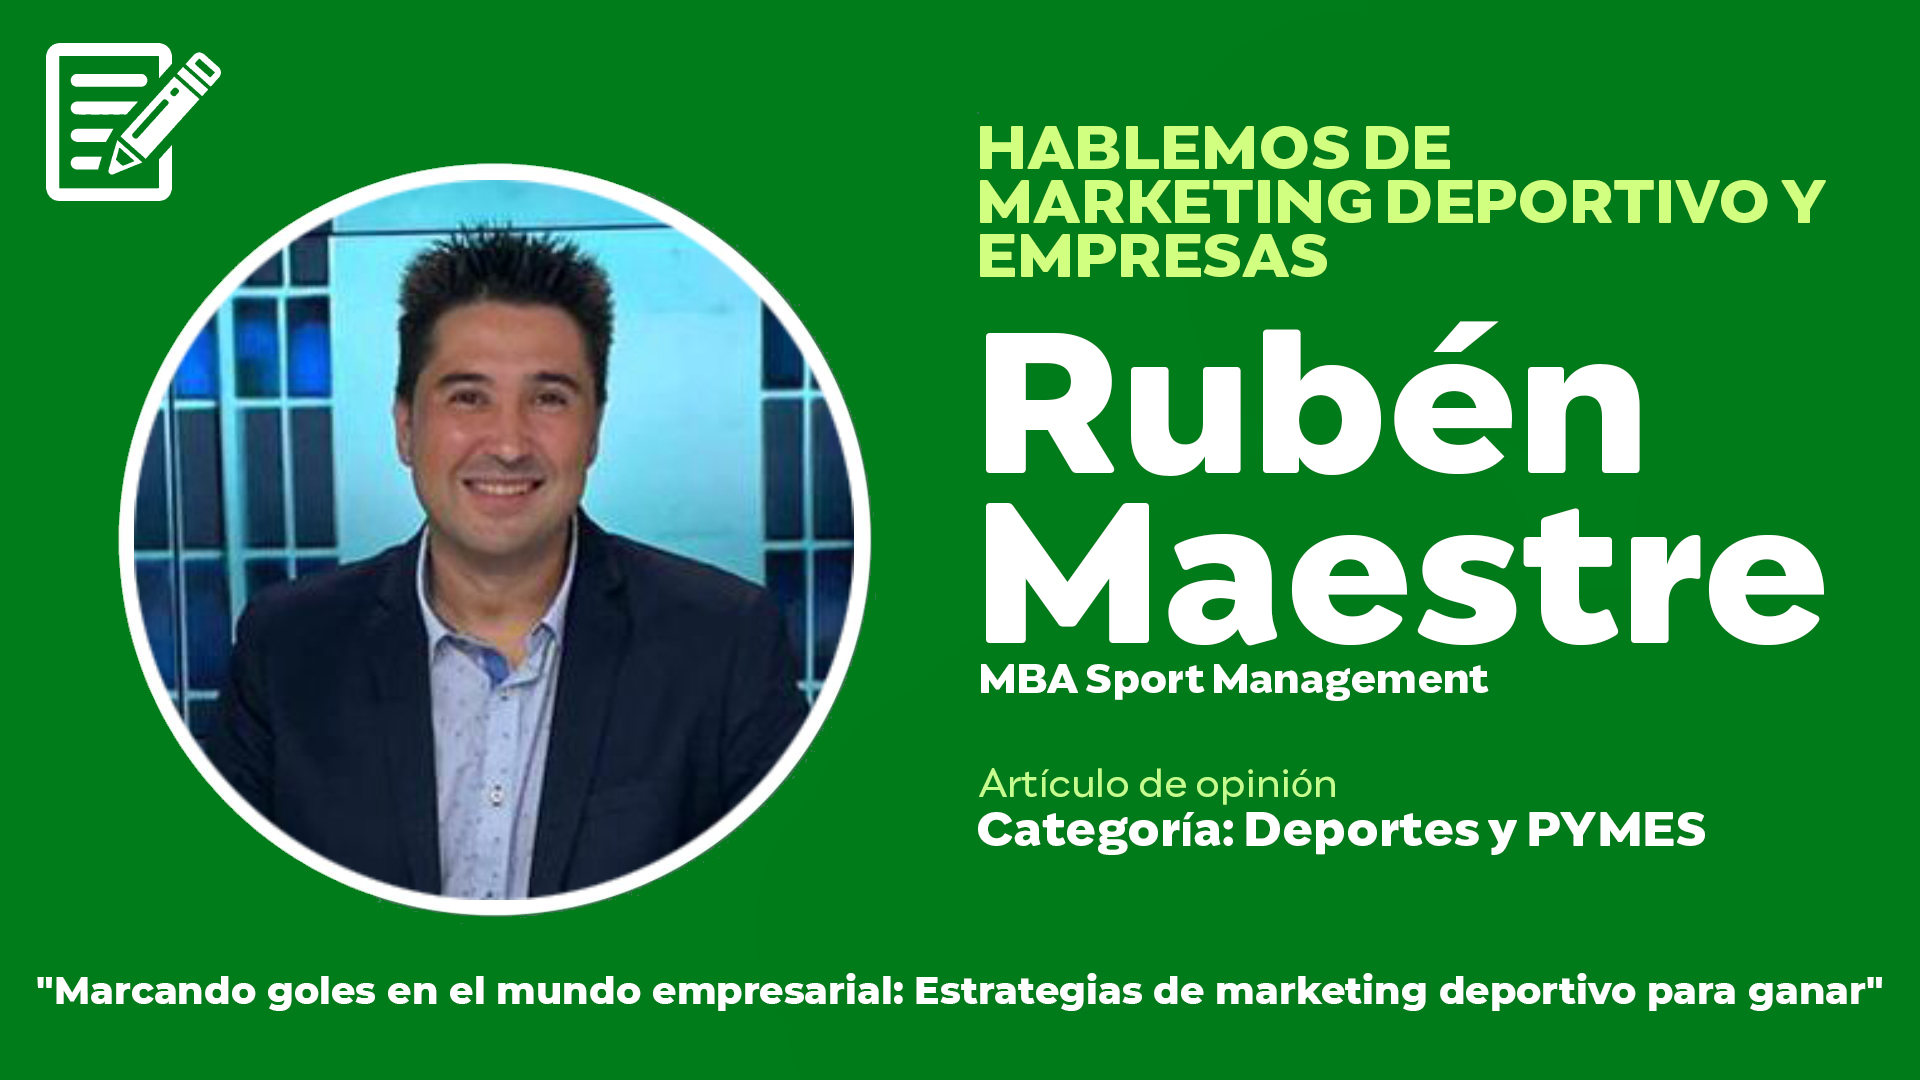 «Marcando goles en el mundo empresarial: Estrategias de marketing deportivo para ganar»